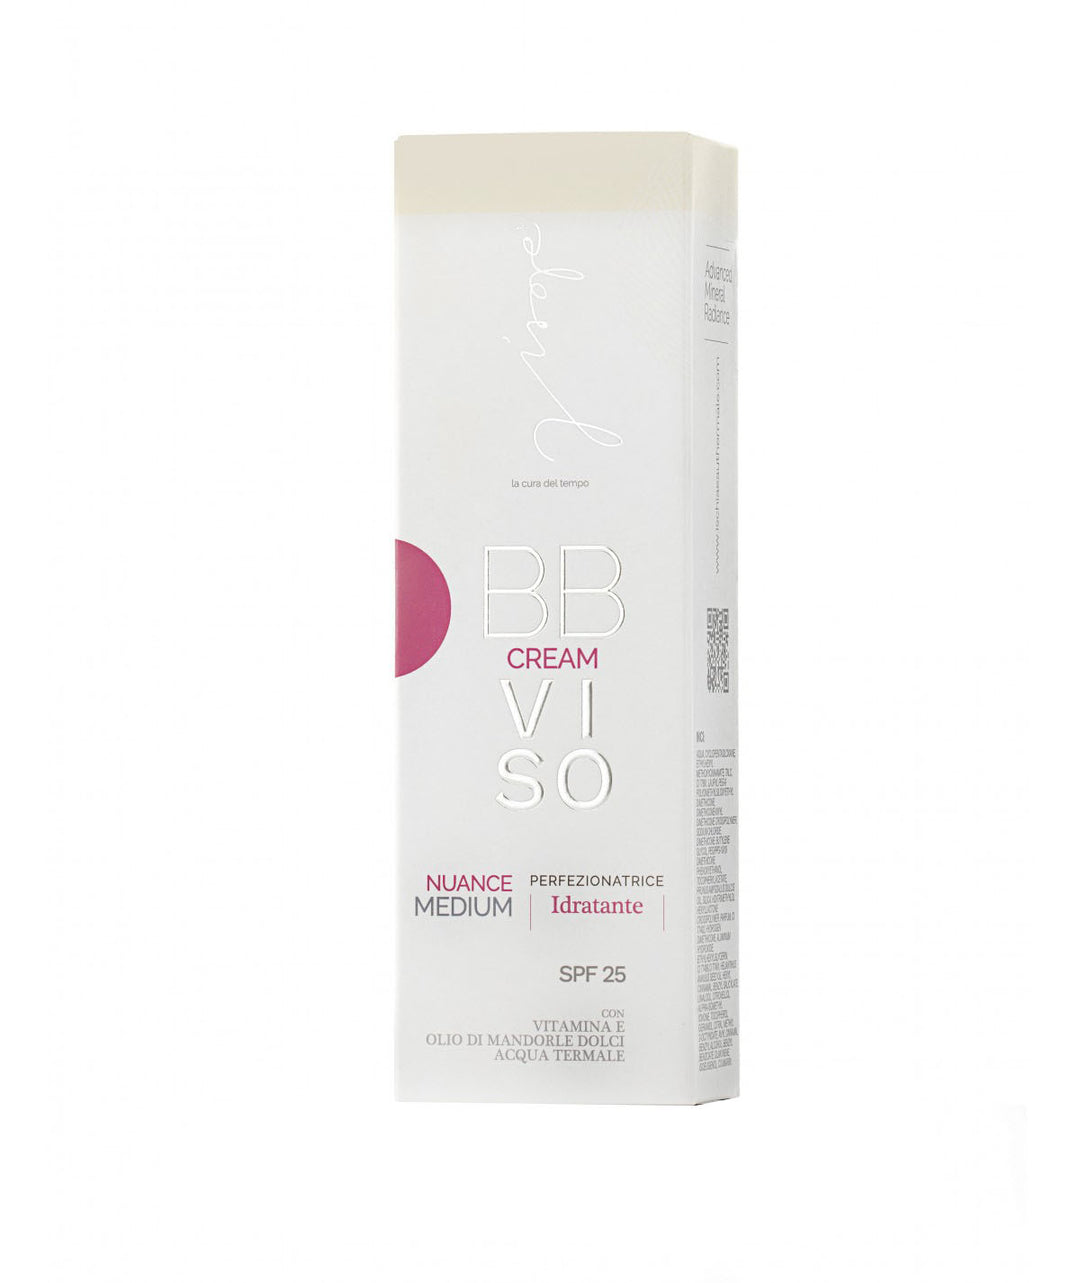 Ischia Eau Thermale Visage BB Cream Viso Perfezionatrice Idratante 30 ml